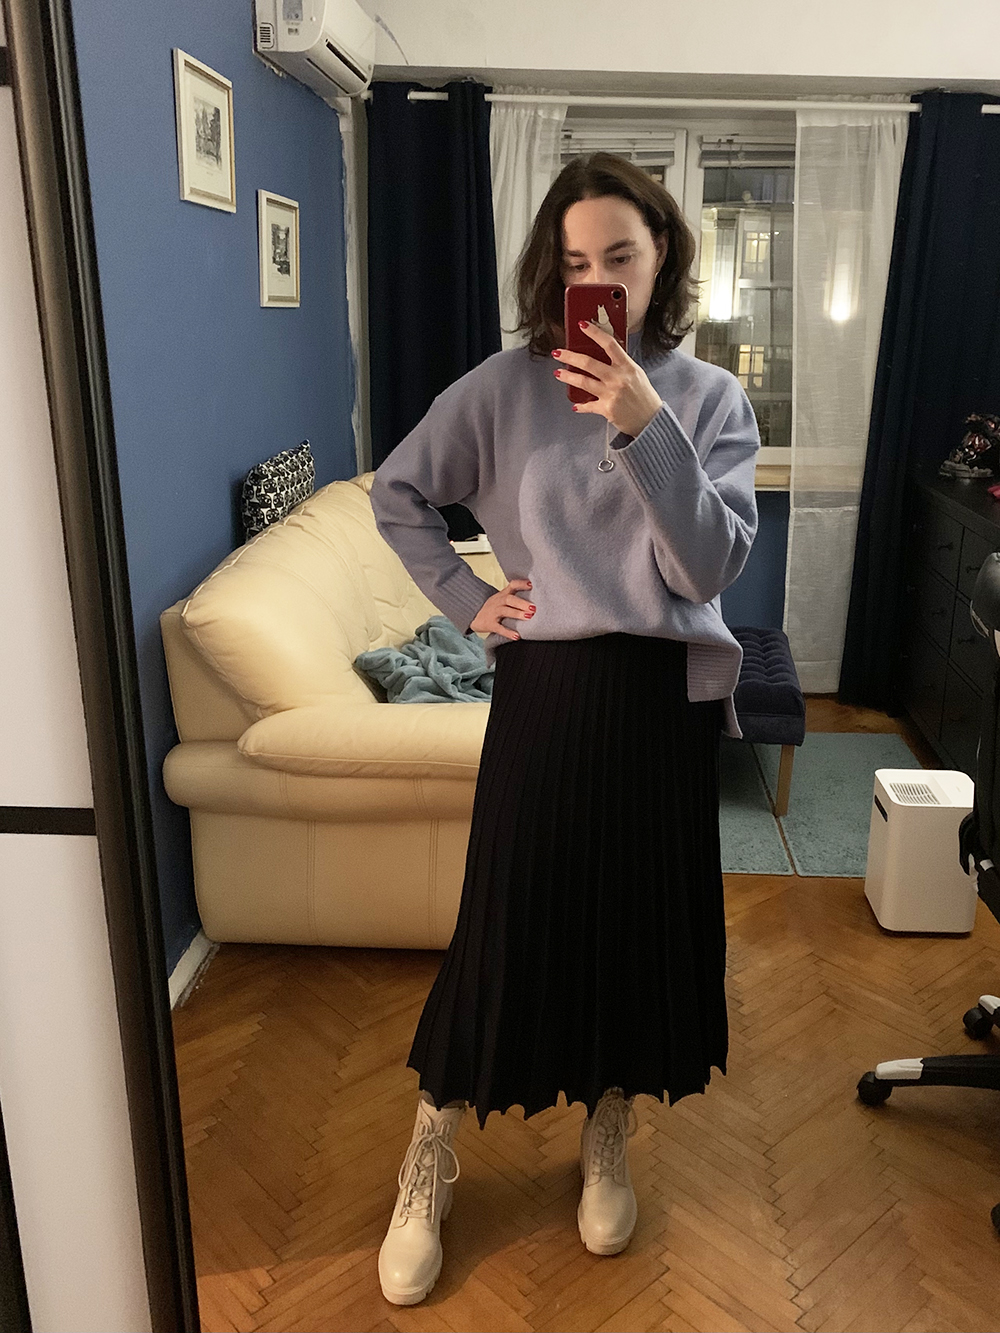 Давно купленная теплая юбка-миди по⁠-⁠новому заиграла в комплекте со свитером из Uniqlo и крутыми ботинками из «Эконики»